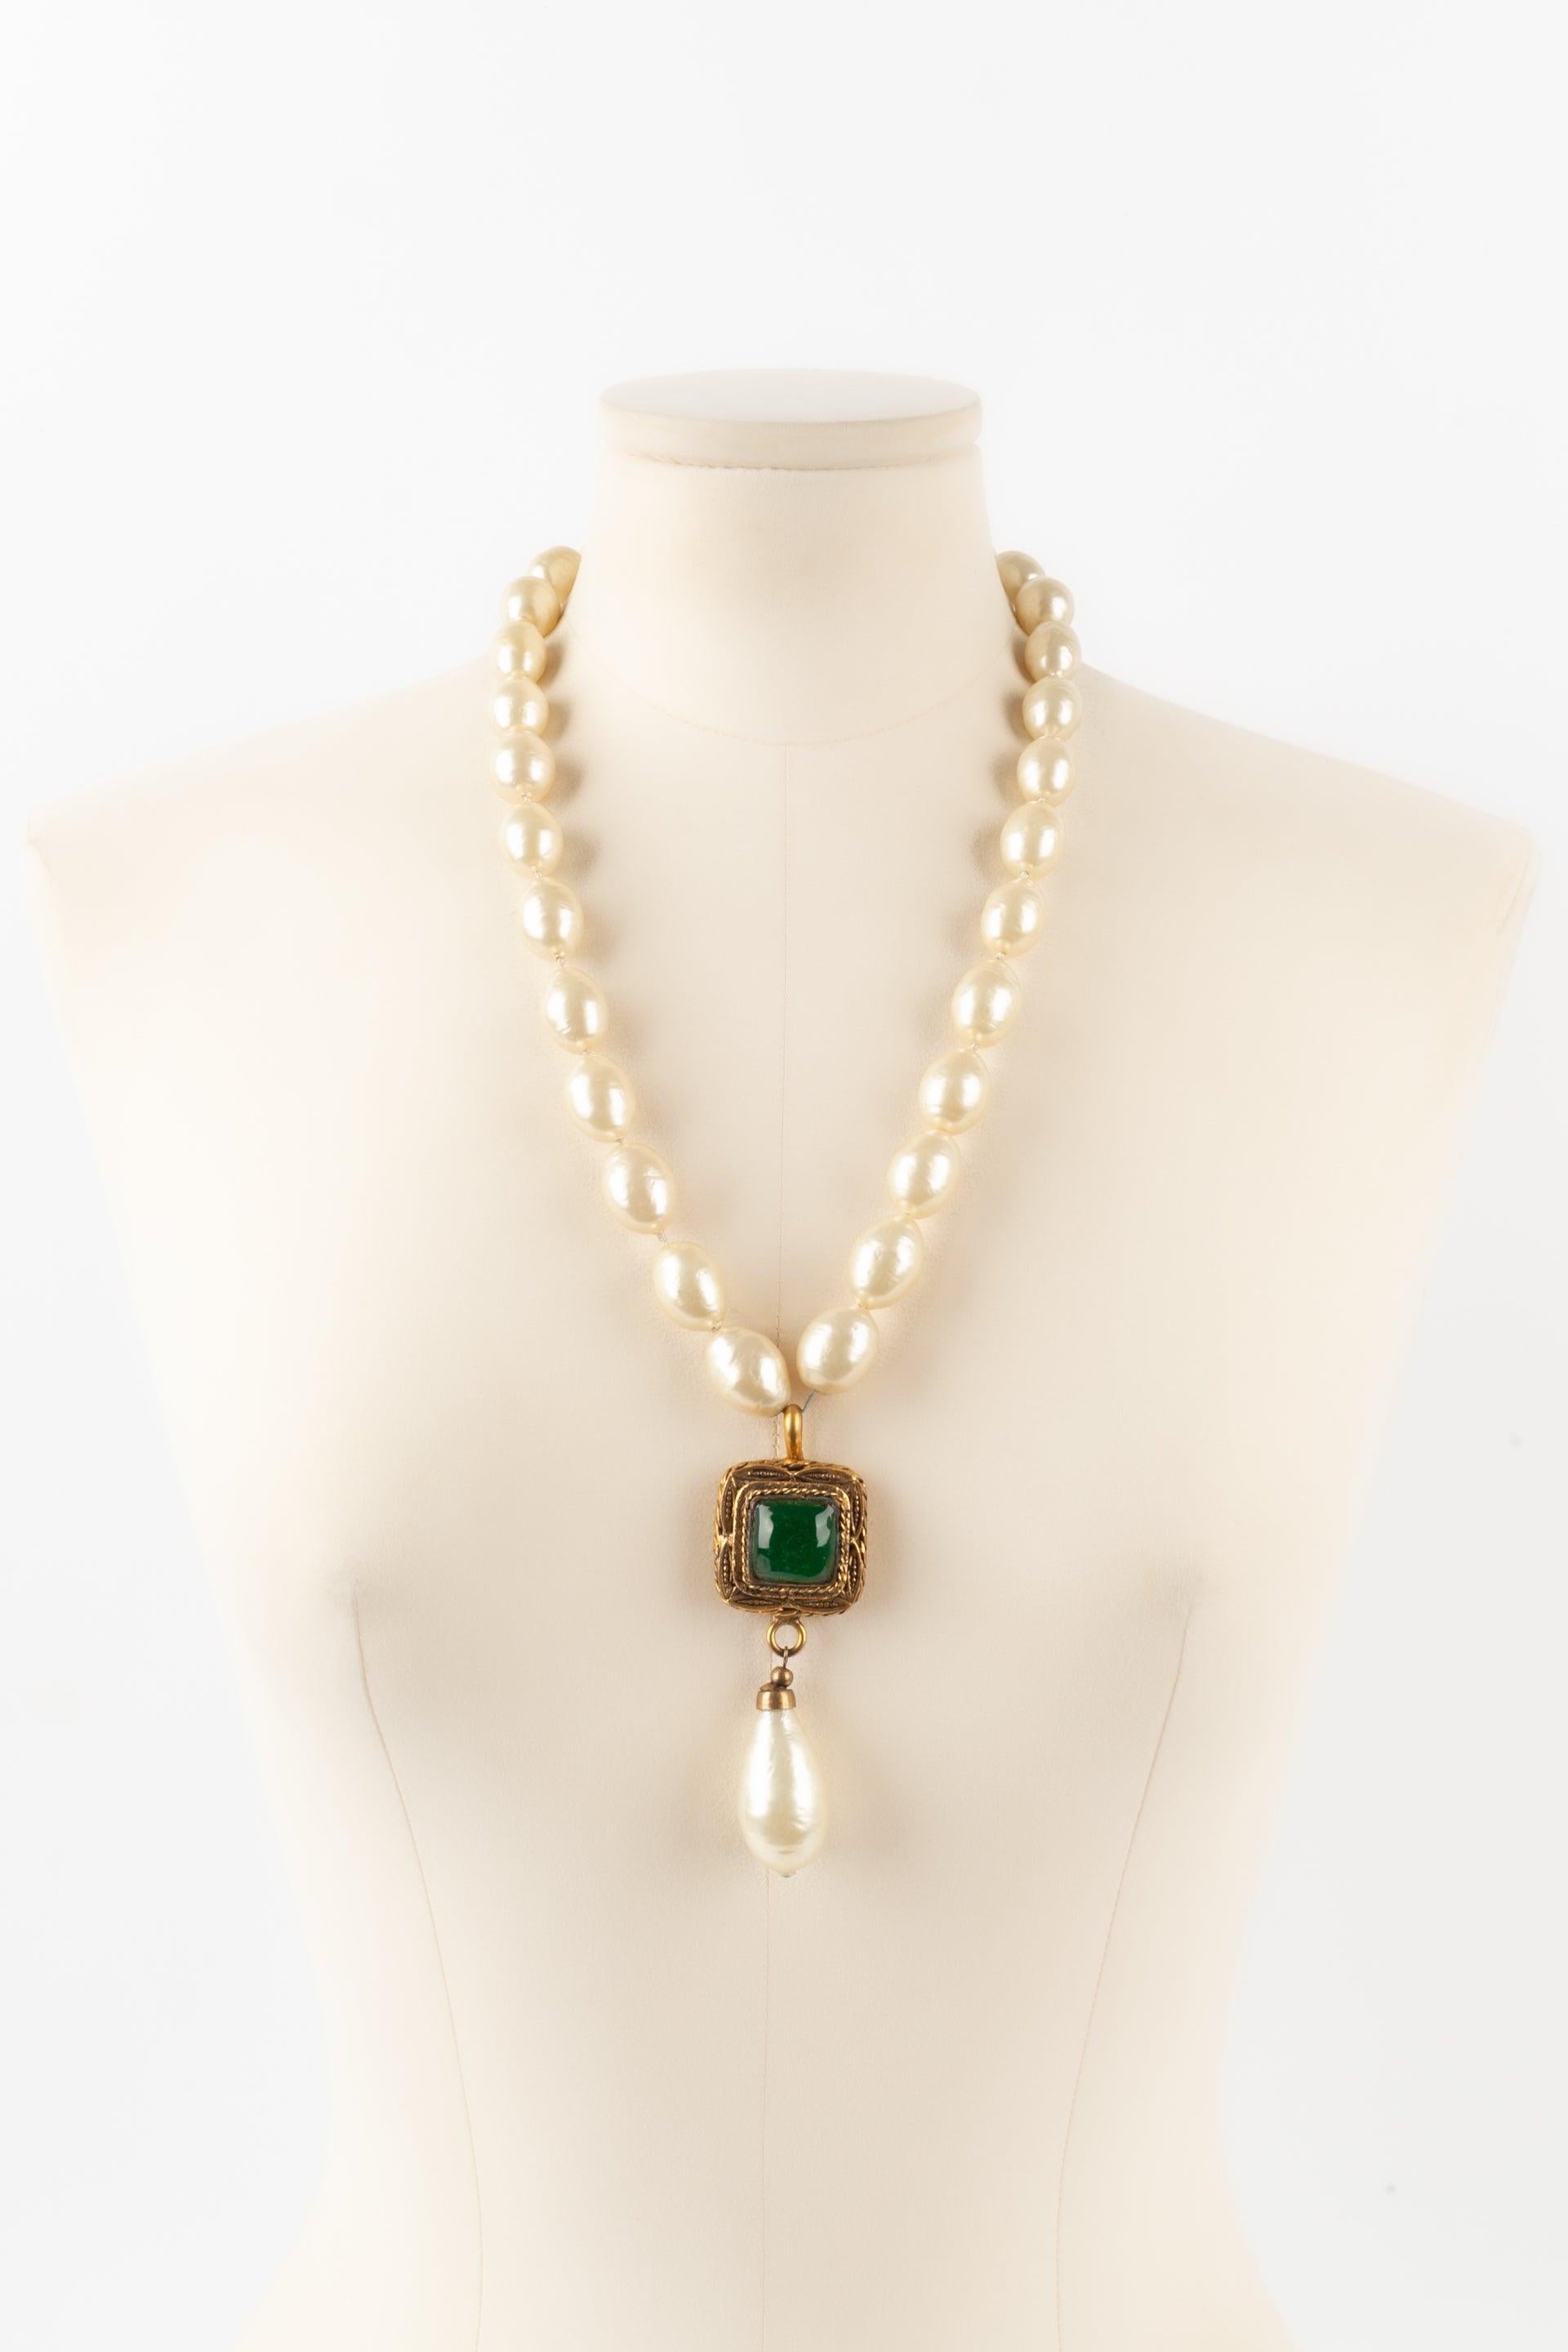 Chanel - Collier de perles fantaisie avec un pendentif en métal doré et une impressionnante goutte nacrée en pâte de verre verte. Collectional 1983.

Informations complémentaires :
Condit : Très bon état.
Dimensions : Longueur : 58 cm à 64